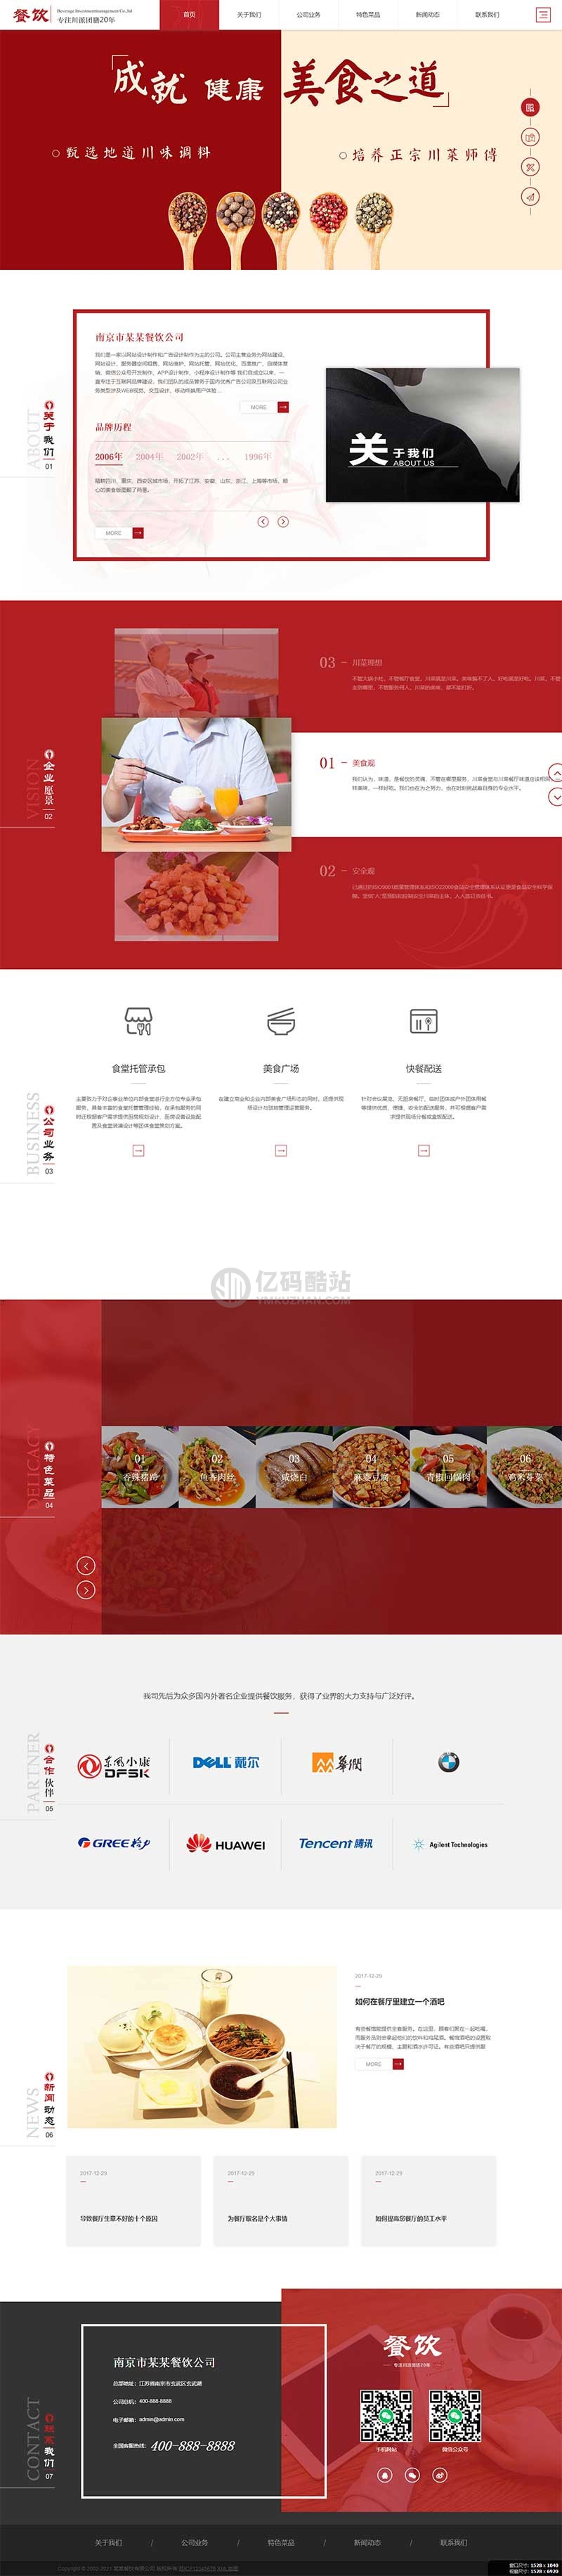 织梦dedecms红色高端响应式美食餐饮集团餐饮投资管理公司网站模板 自适应手机端